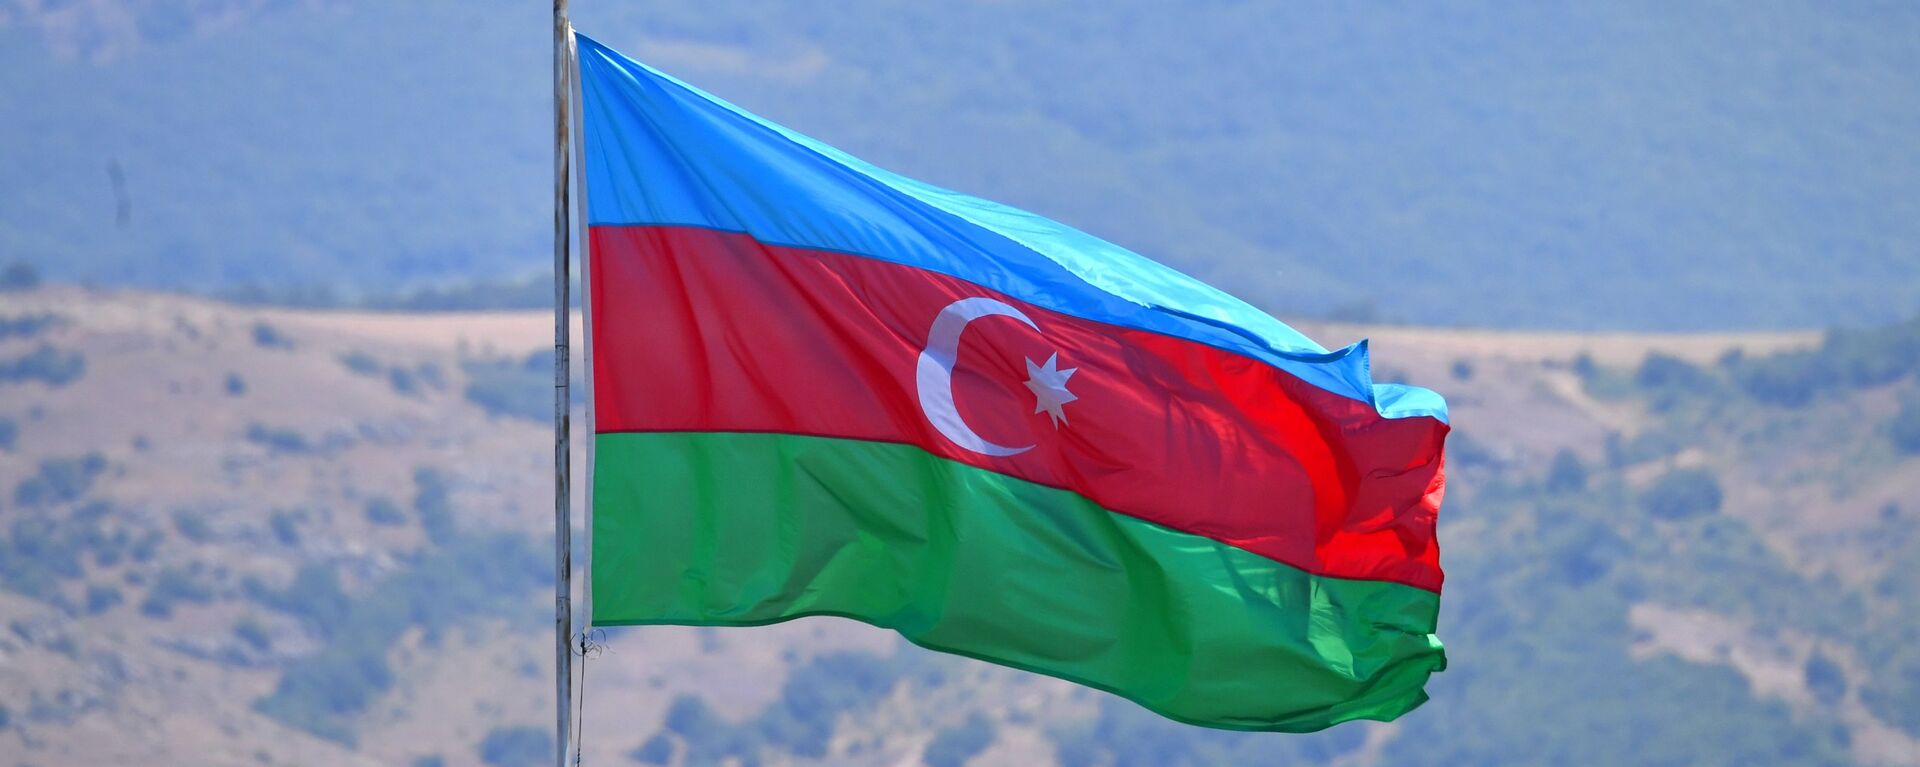 Azərbaycan bayrağı - Sputnik Azərbaycan, 1920, 26.08.2022